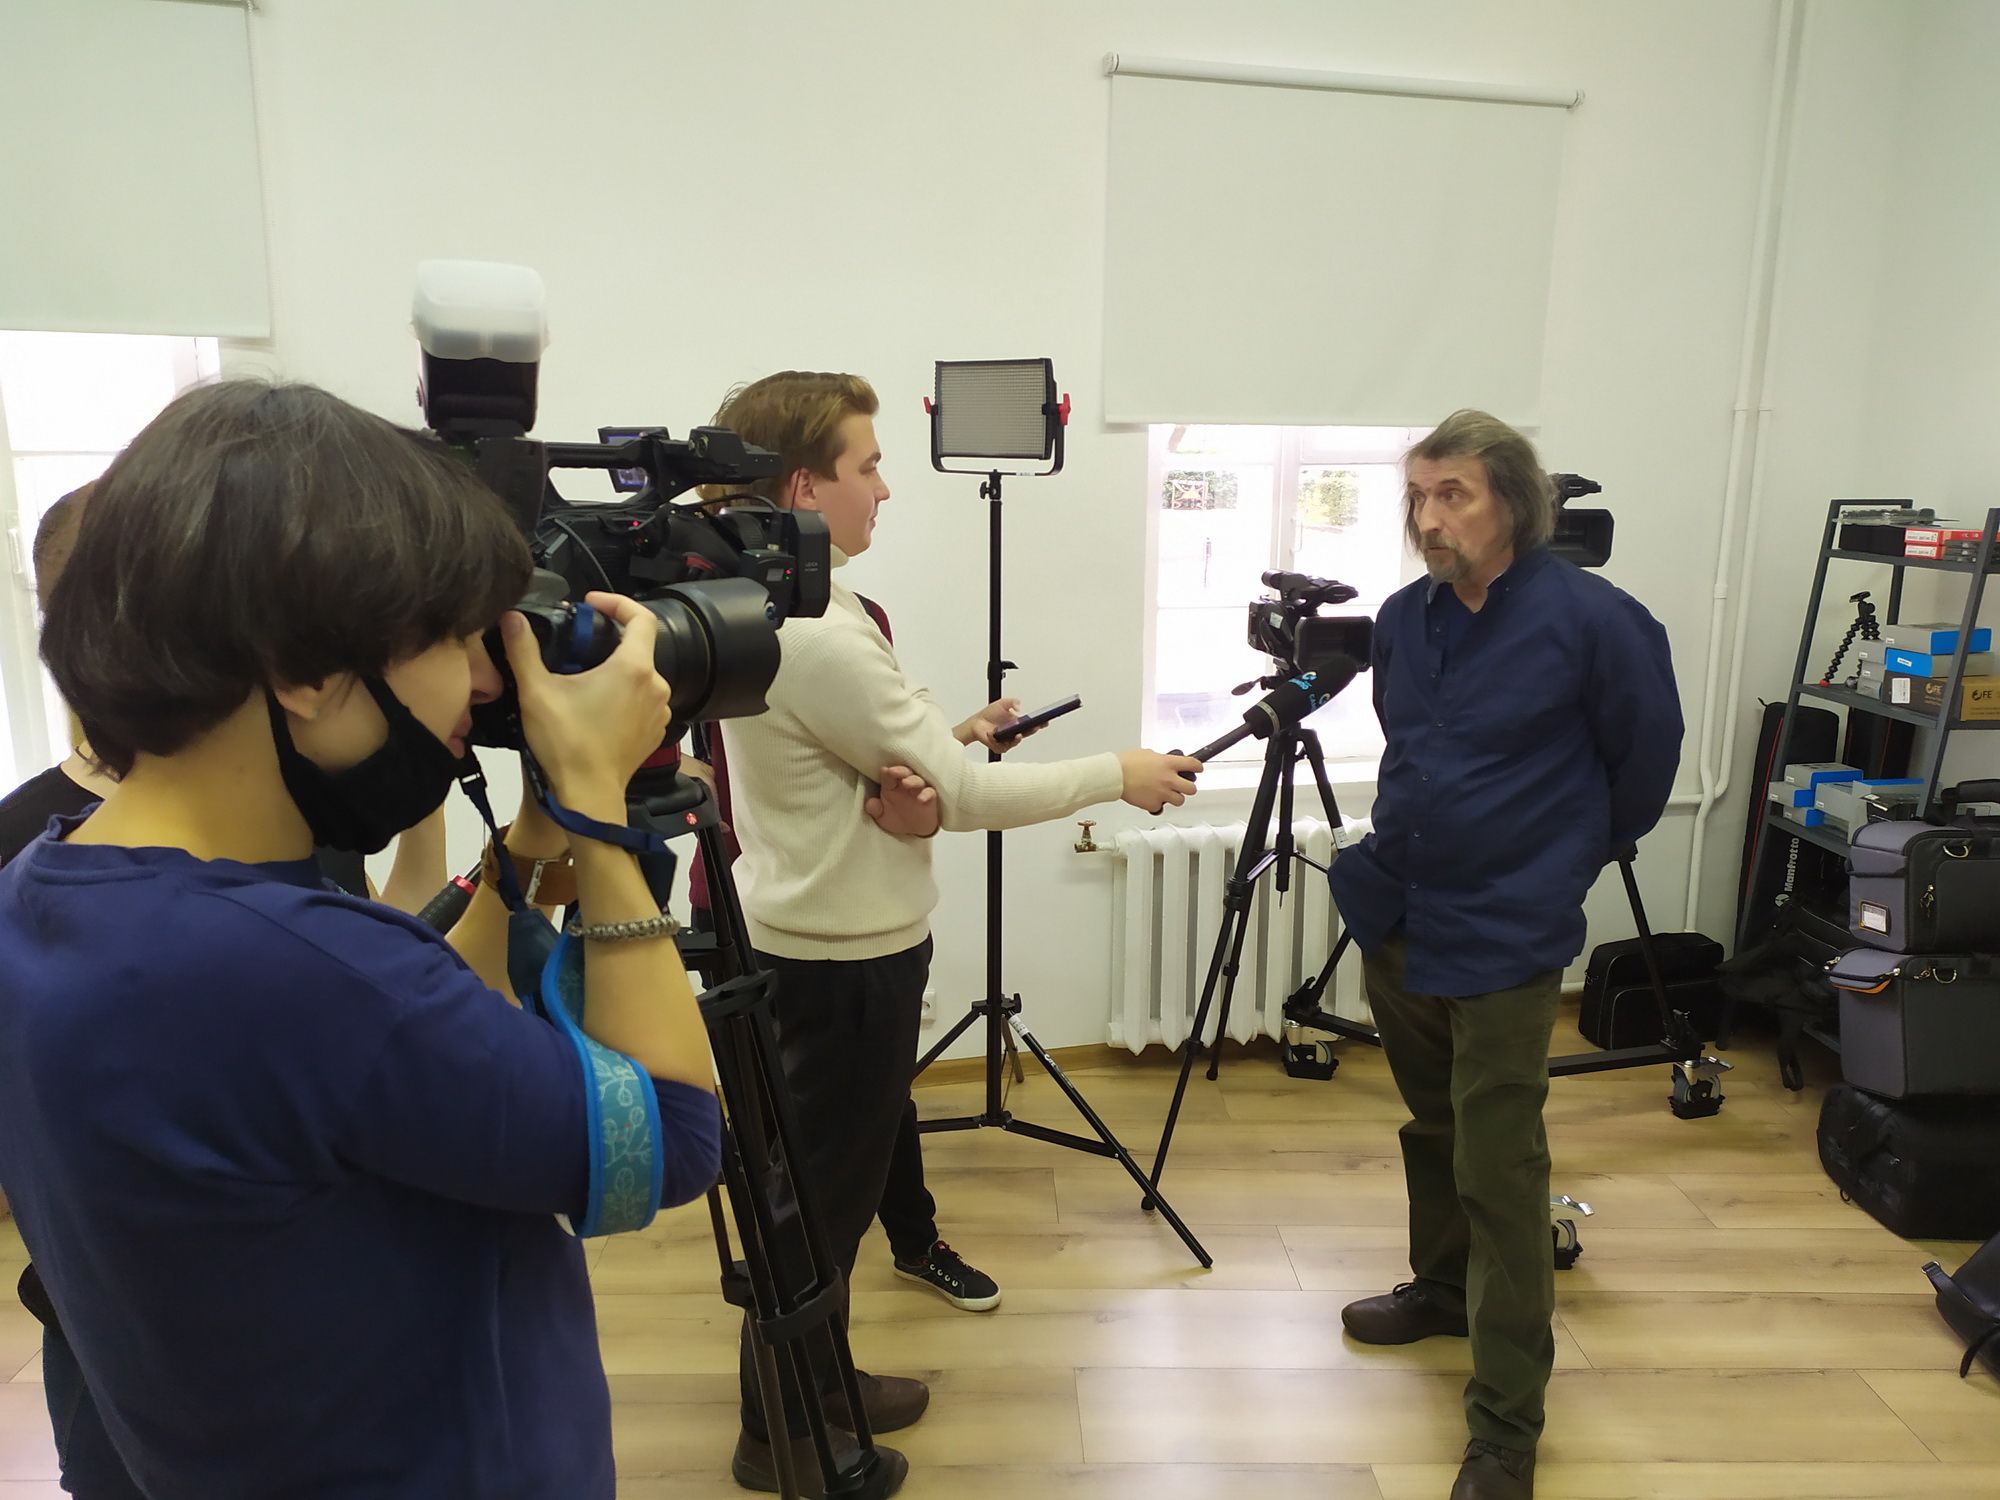 Vyhod-mediakeskuksen johtaja Sergei Terentjev kertoo Petroskoin taiteilijaresidenssin työstä. Kuva: Jelena Maloduševa